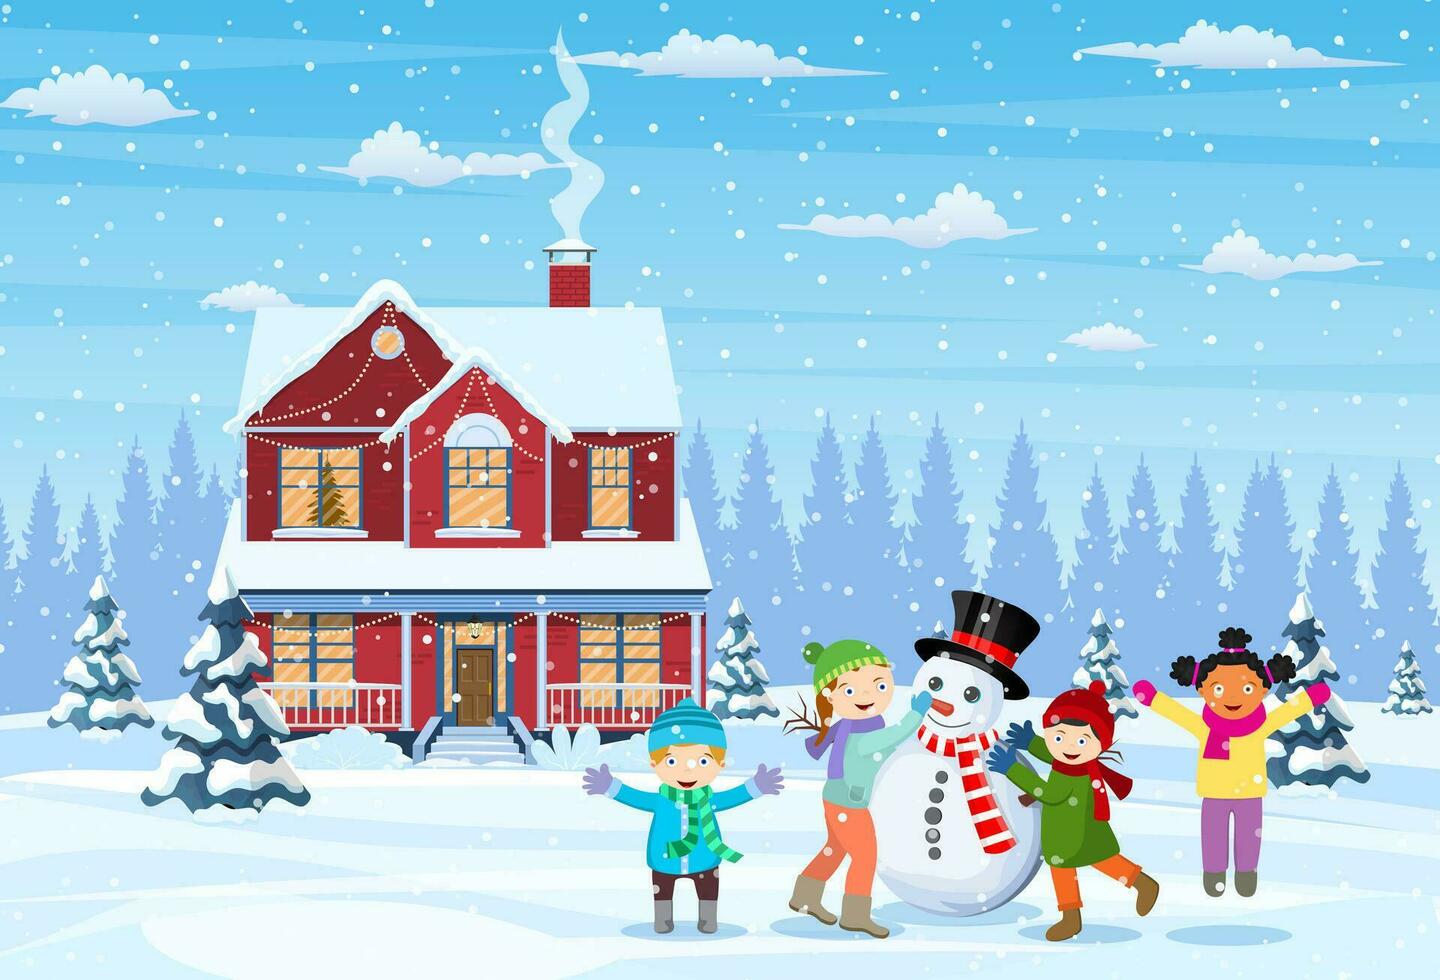 contento nuevo año y alegre Navidad saludo tarjeta. Navidad paisaje.niños edificio muñeco de nieve. invierno vacaciones. vector ilustración en plano estilo